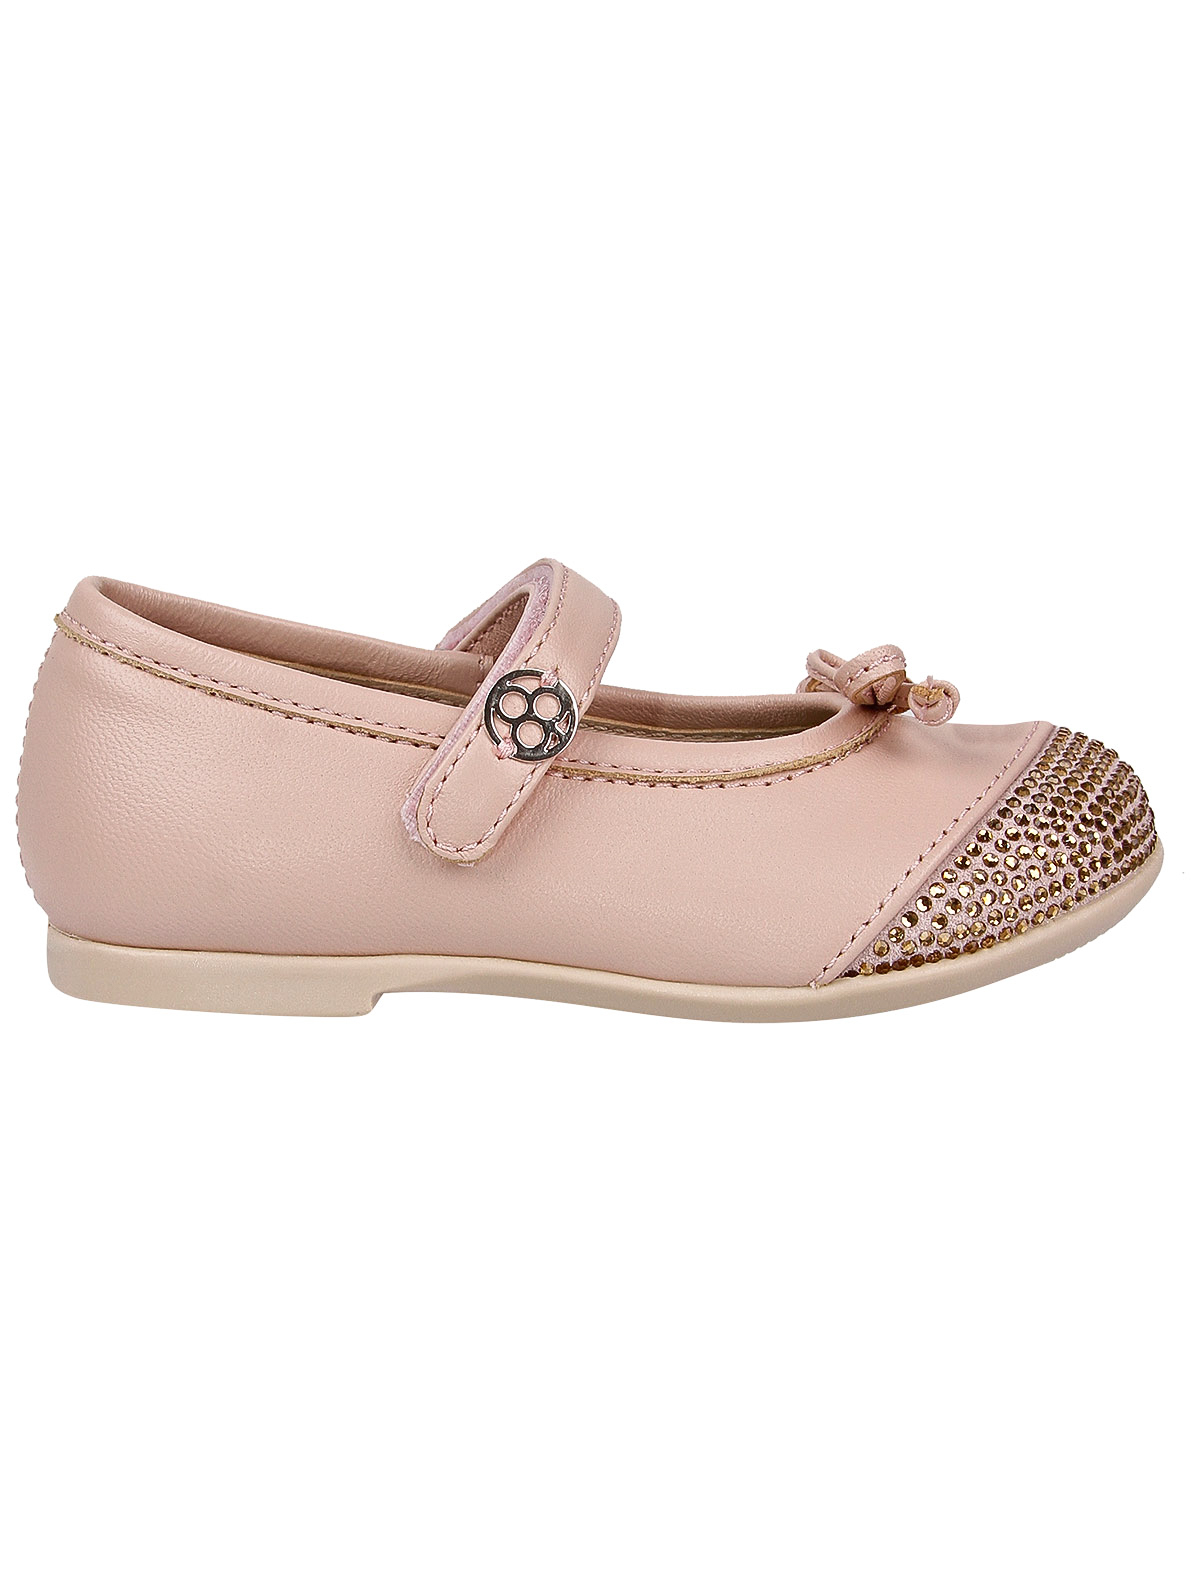 Туфли Florens 2197061, цвет розовый, размер 25 2014509070844 - фото 2